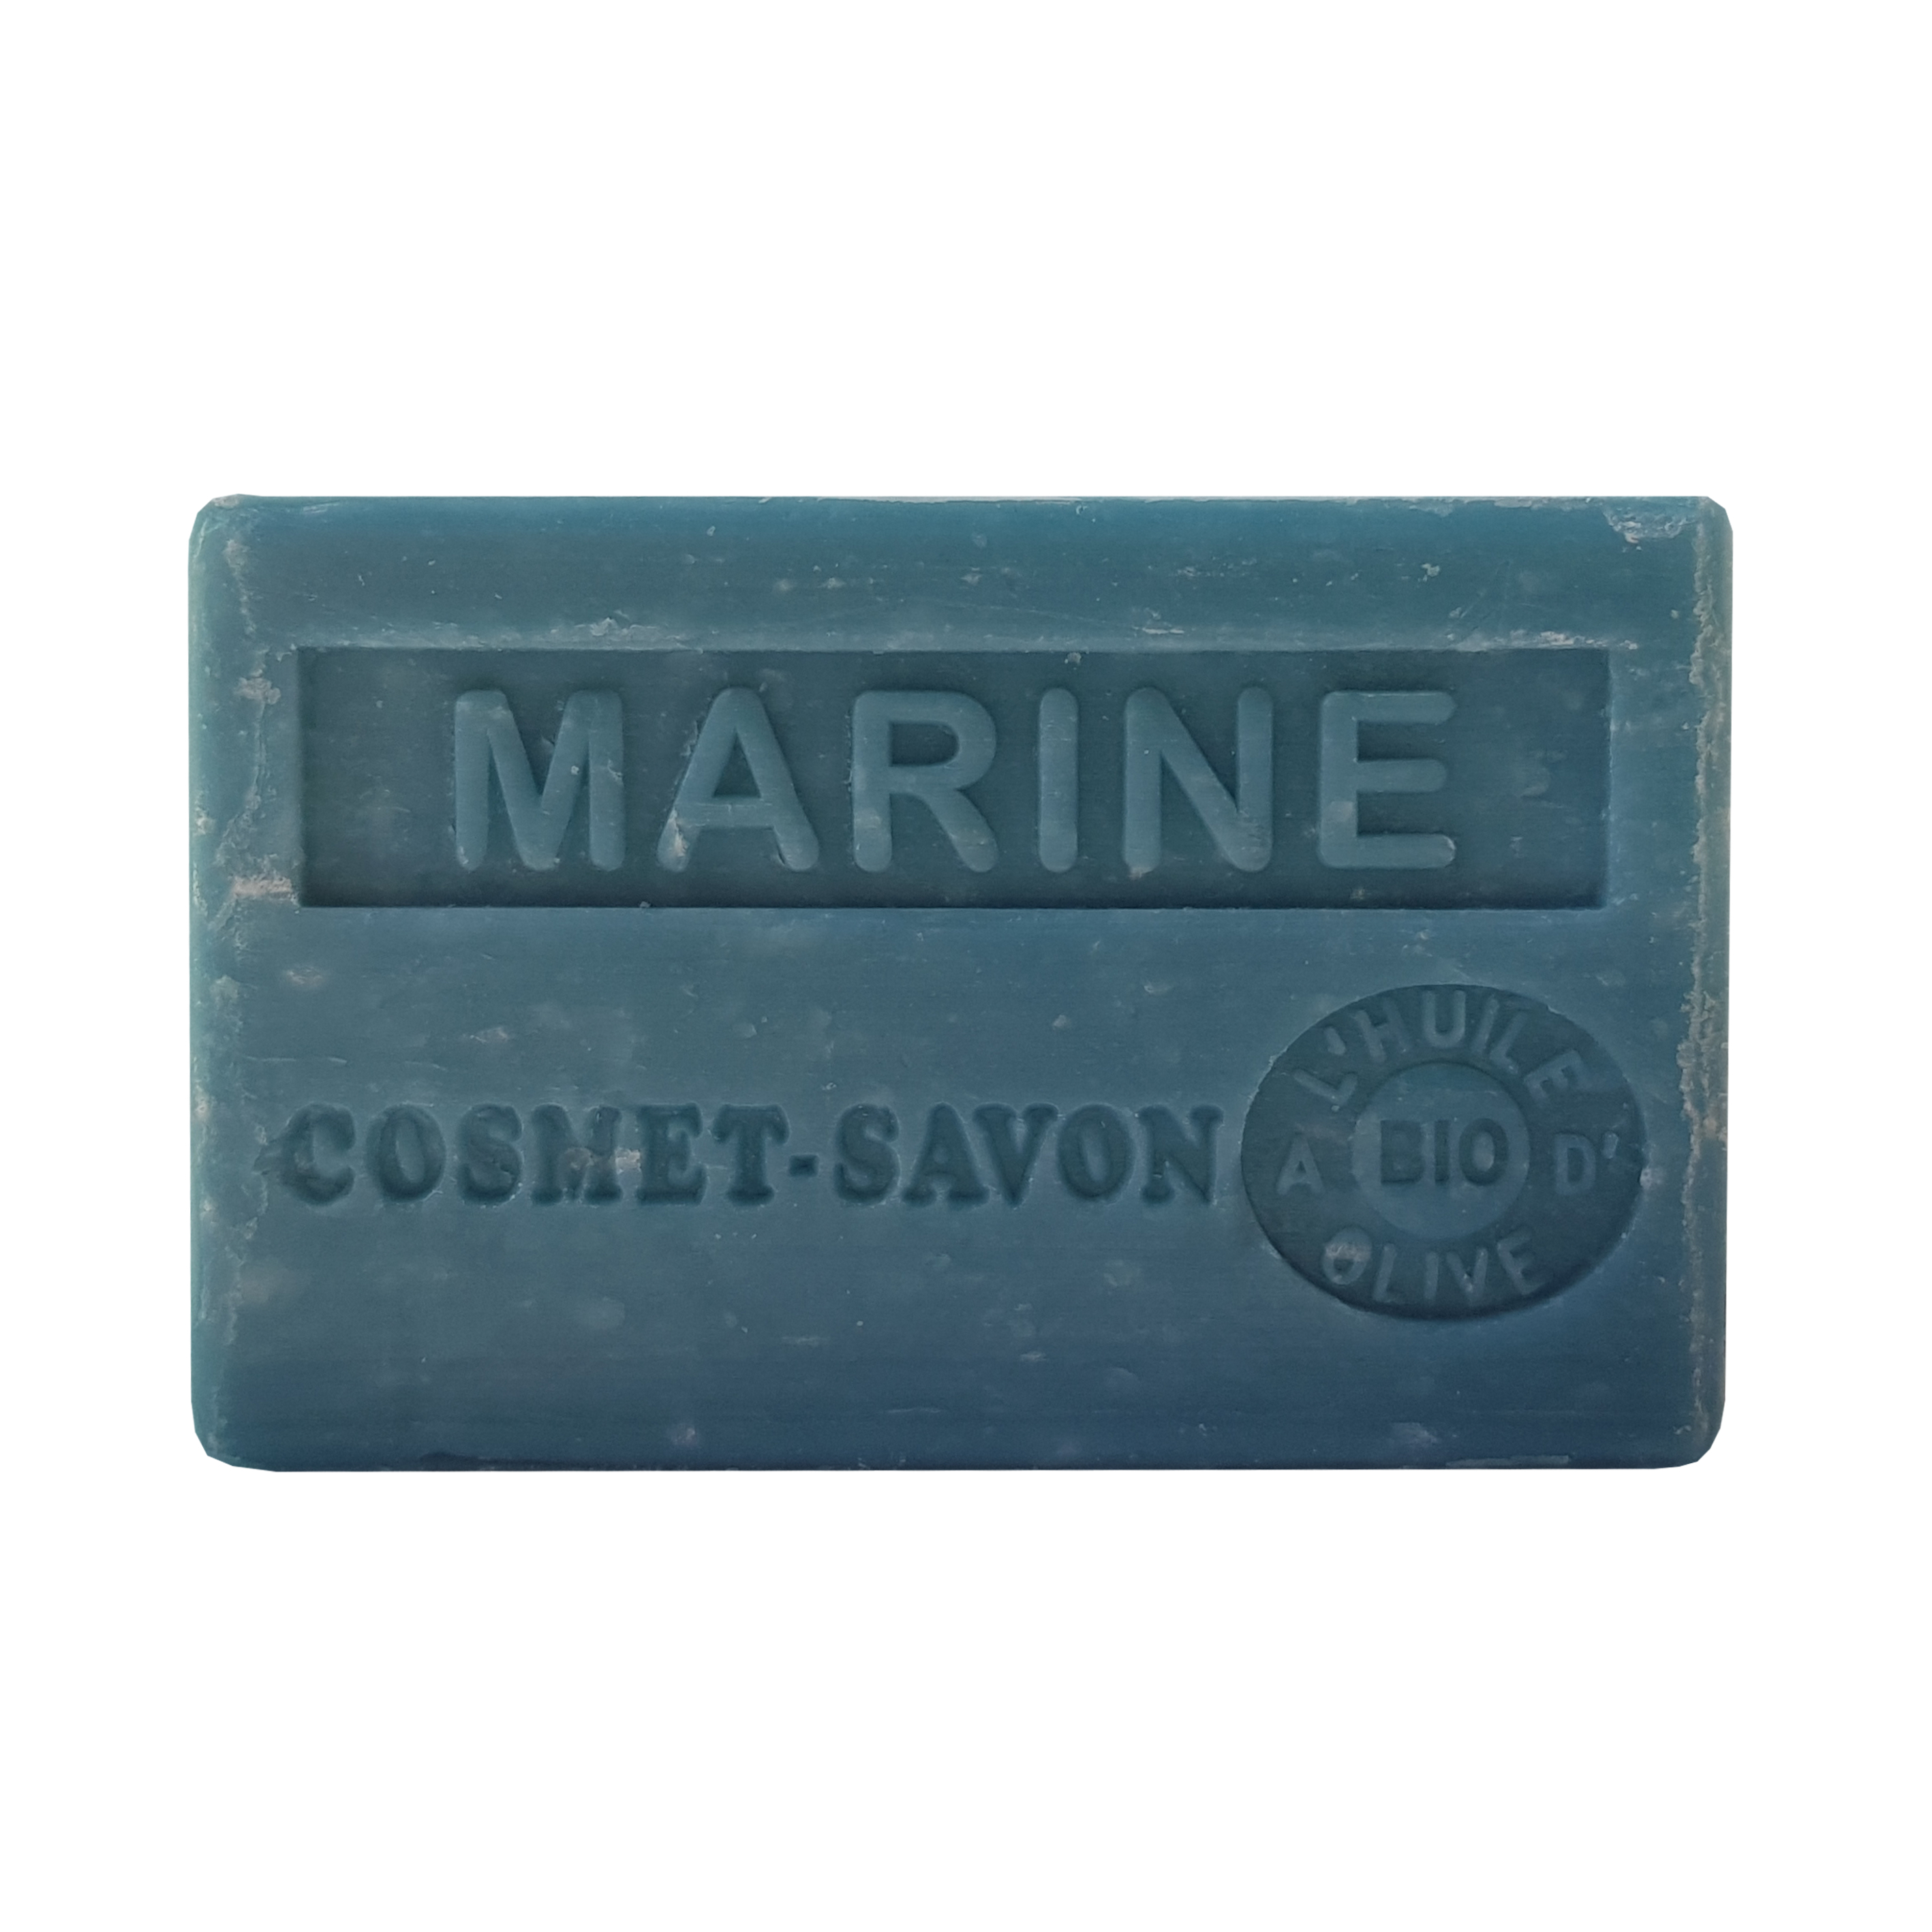 marine-savon-125gr-au-beurre-de-karite-bio-cosmet-savon-3665205006485-face-JPEG